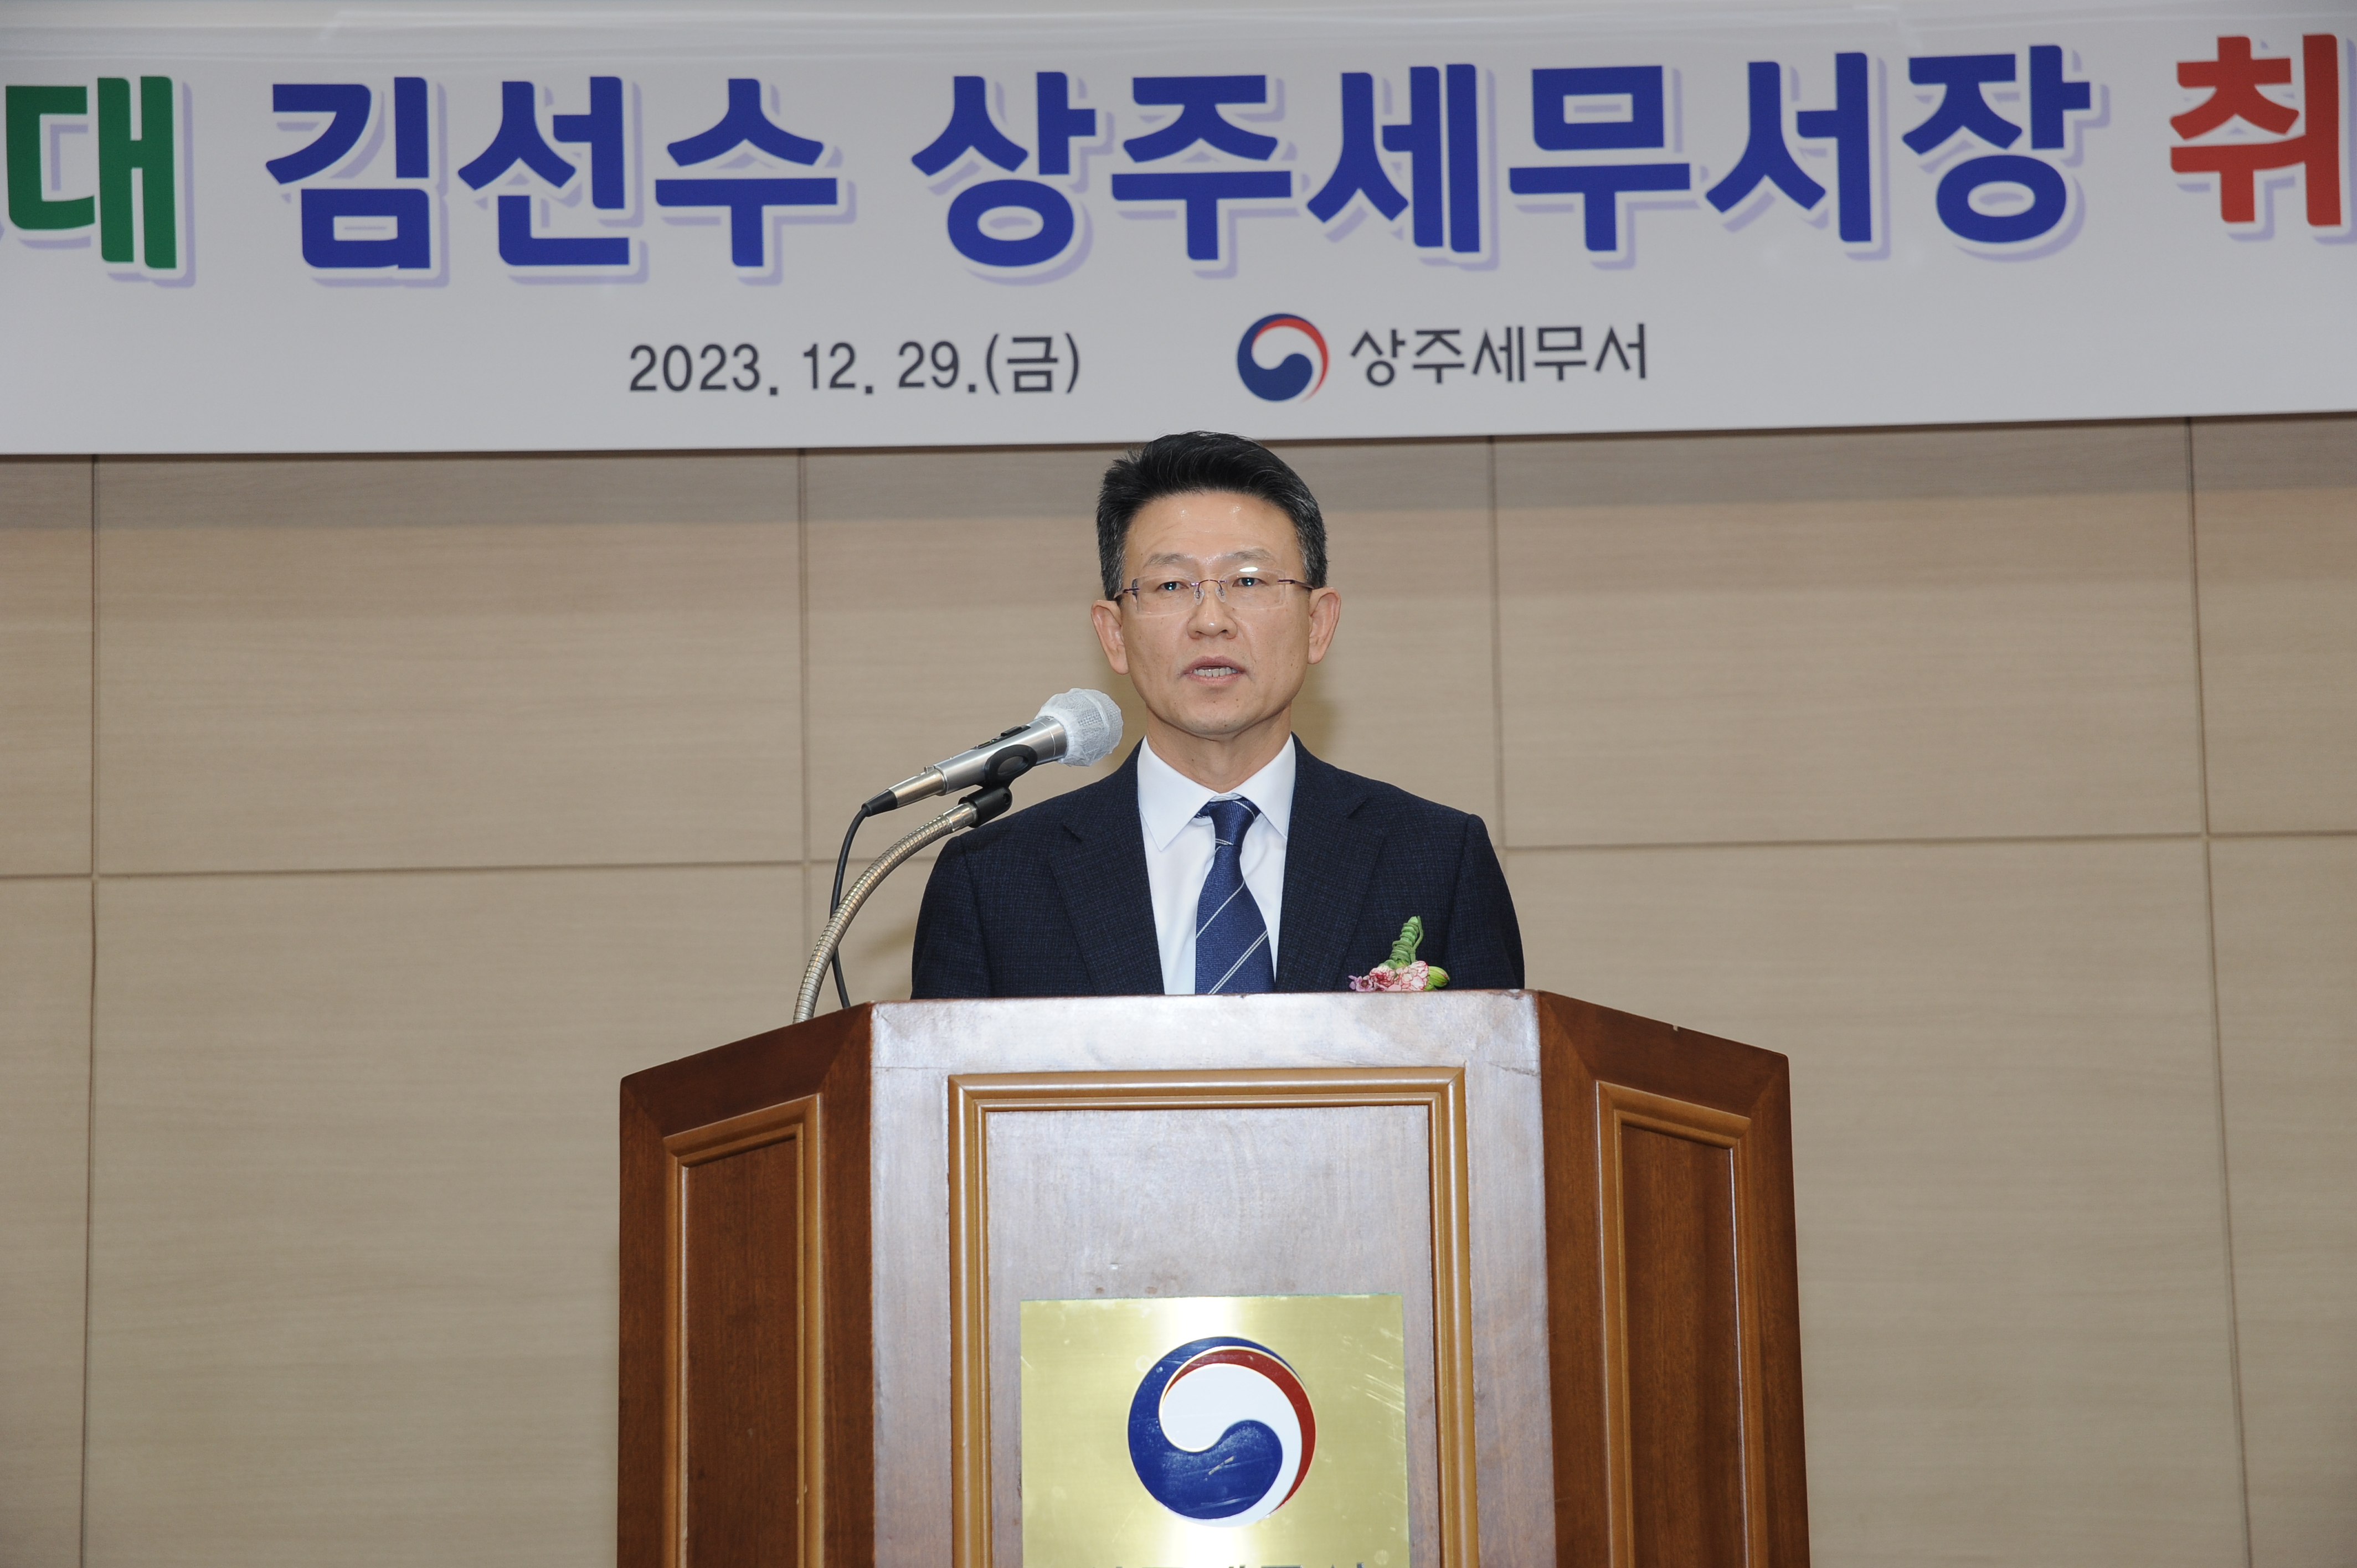 제68대 김선수 상주세무서장 취임식